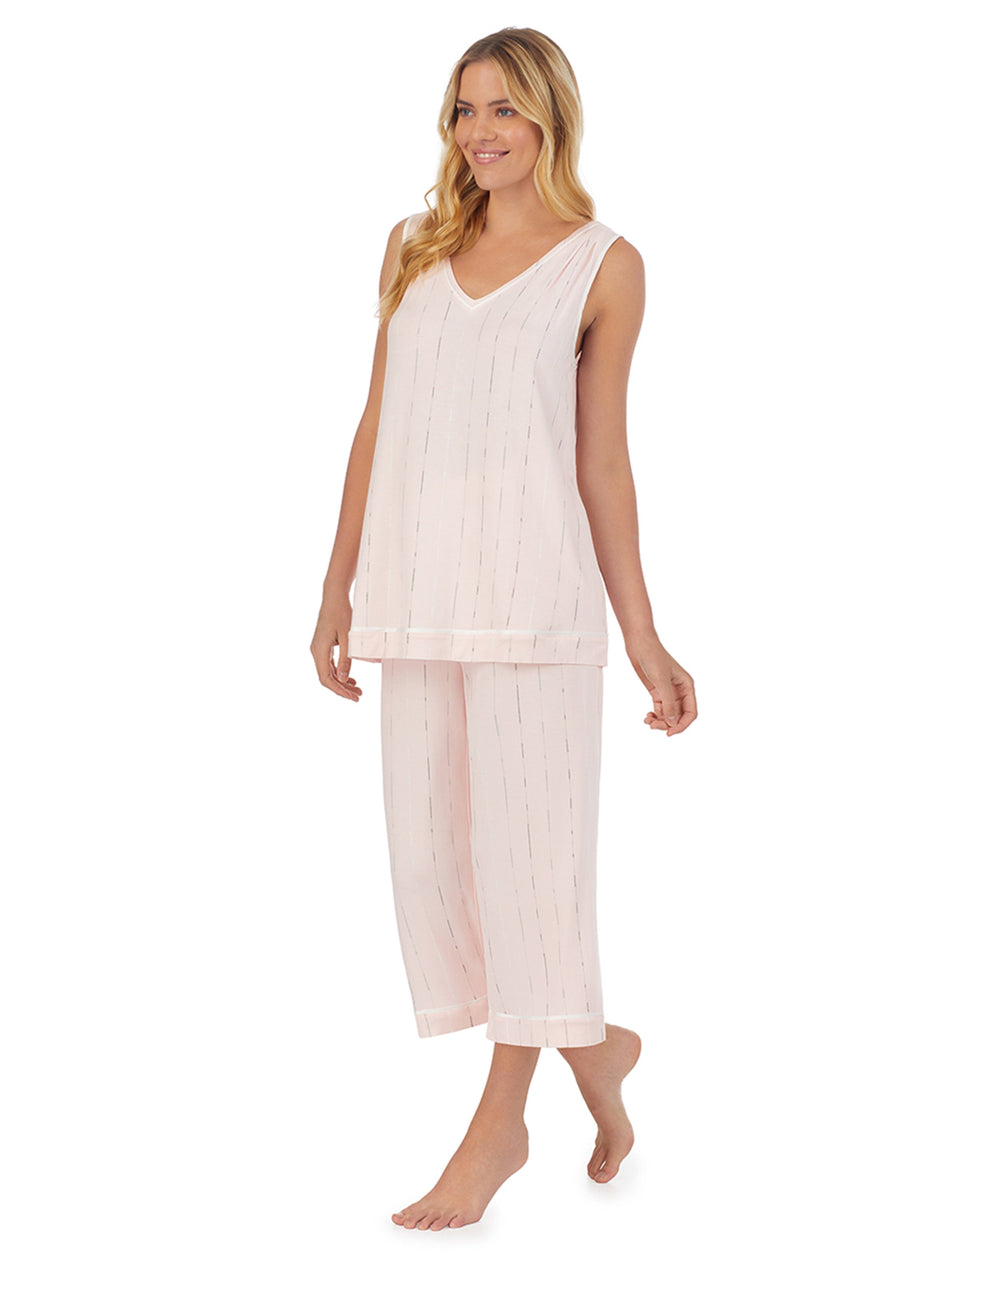 Sleepwear Pajama Sets | Anne Klein